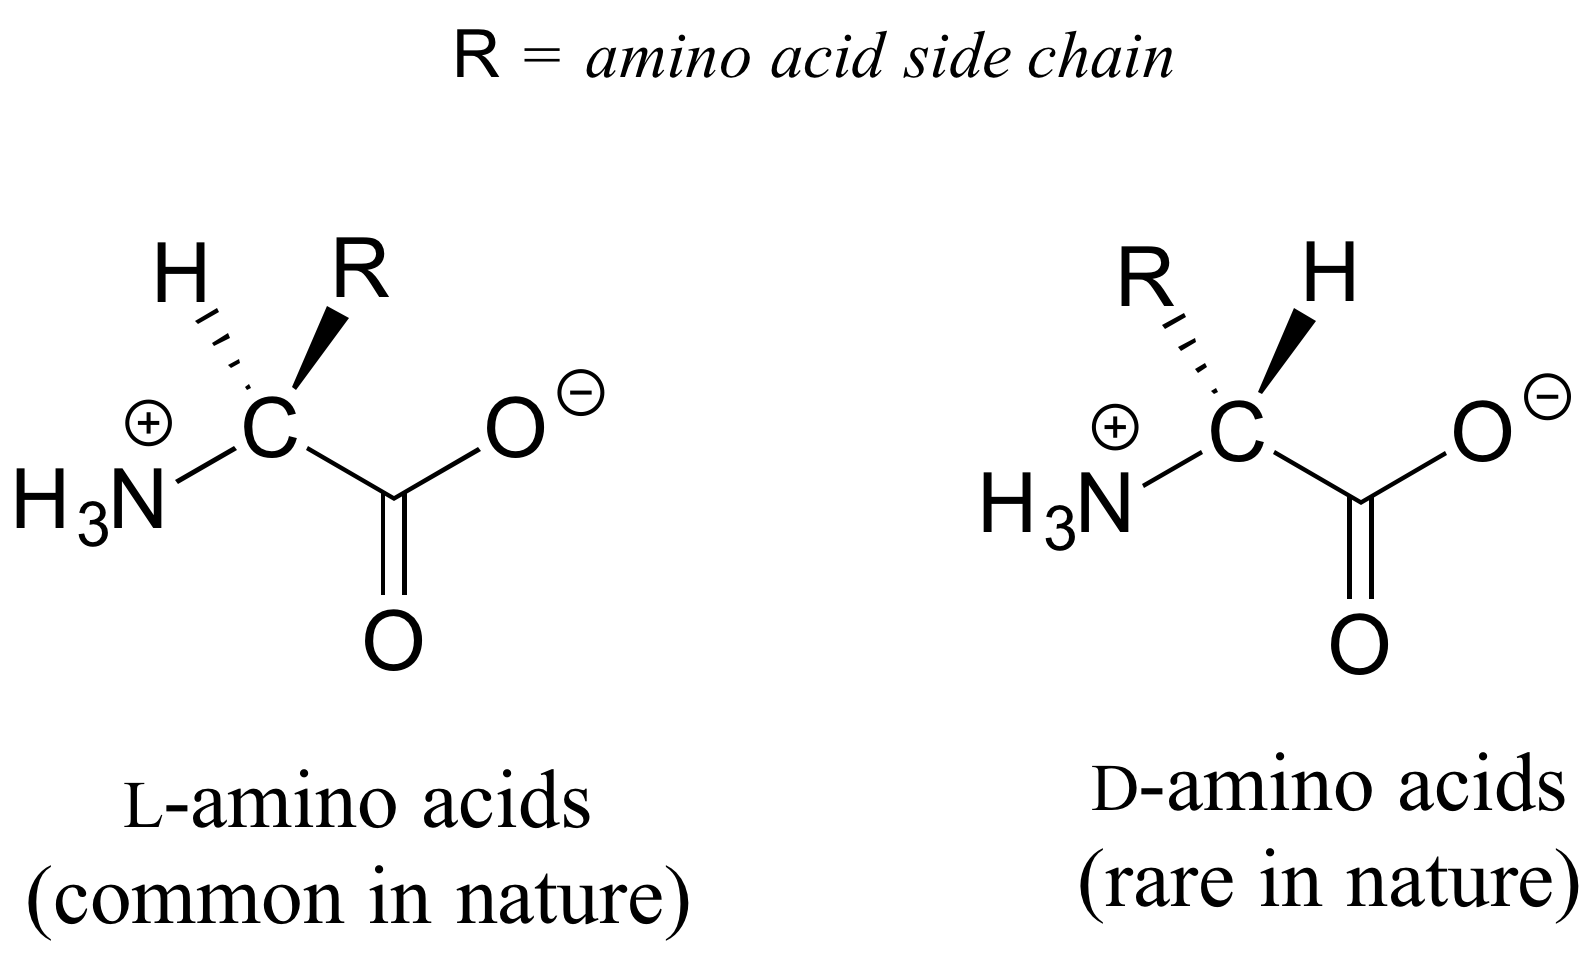 Dos estructuras de aminoácidos diferentes. R es igual a la cadena lateral de aminoácidos. Izquierda: L-aminoácidos (comunes en la naturaleza); estructura de aminoácidos básicos con grupo R en cuña. Derecha: D-aminoácidos (raros en la naturaleza); estructura básica de aminoácidos con grupo R en guiones.